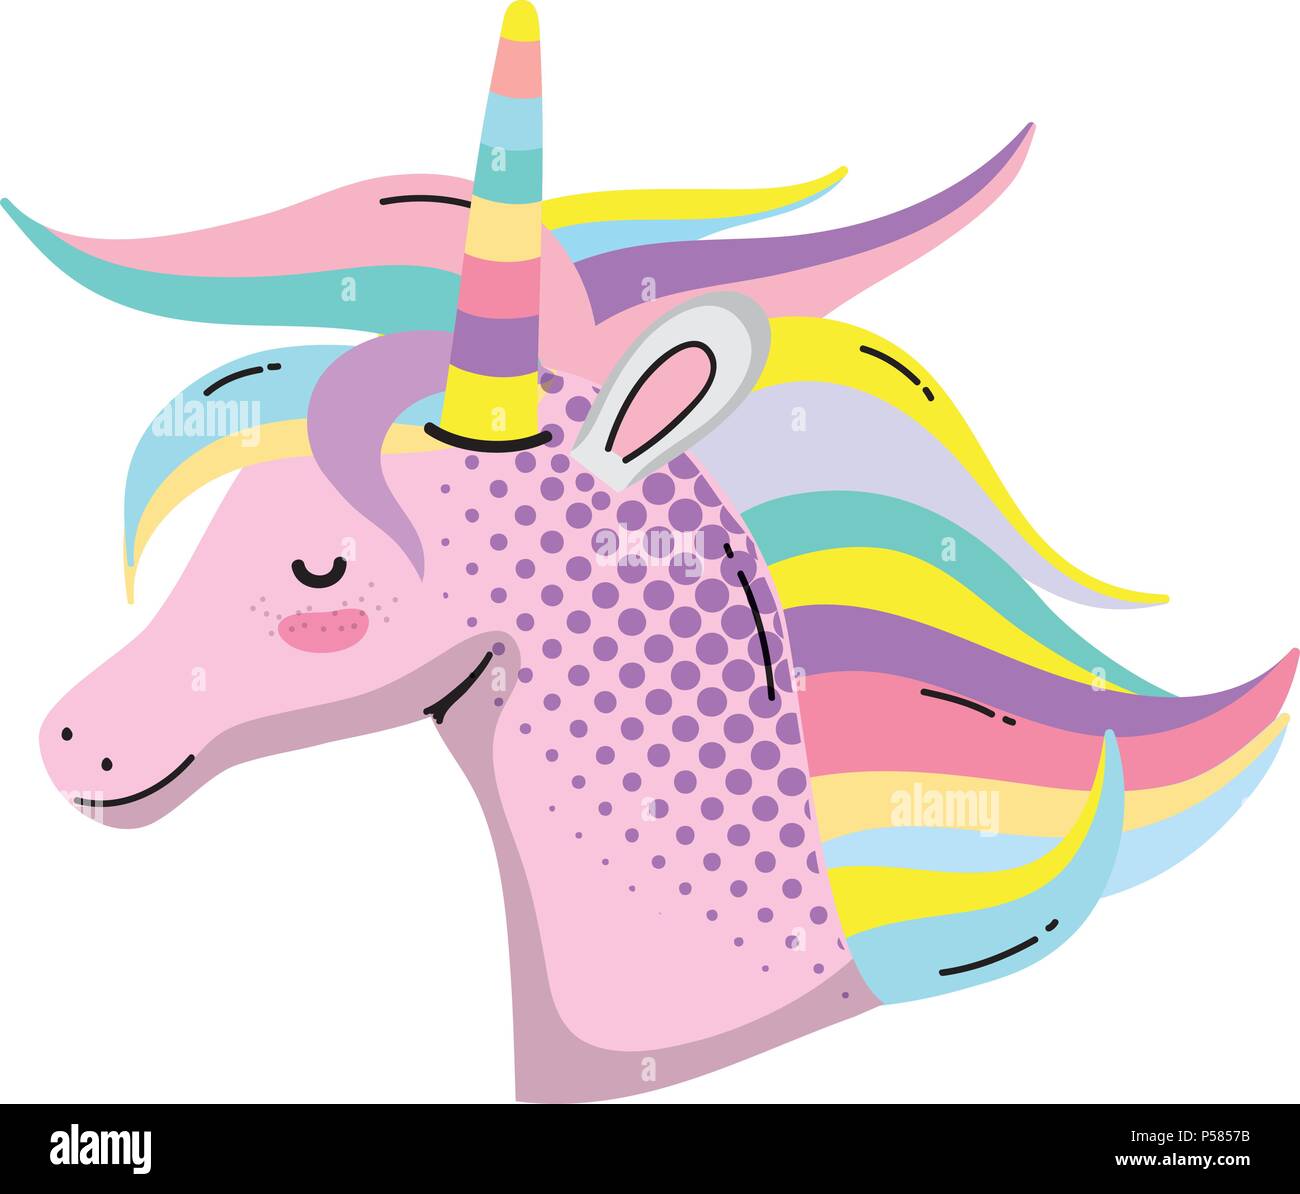 cute unicorn head with hair and horn vector illustration Stock Vector ...